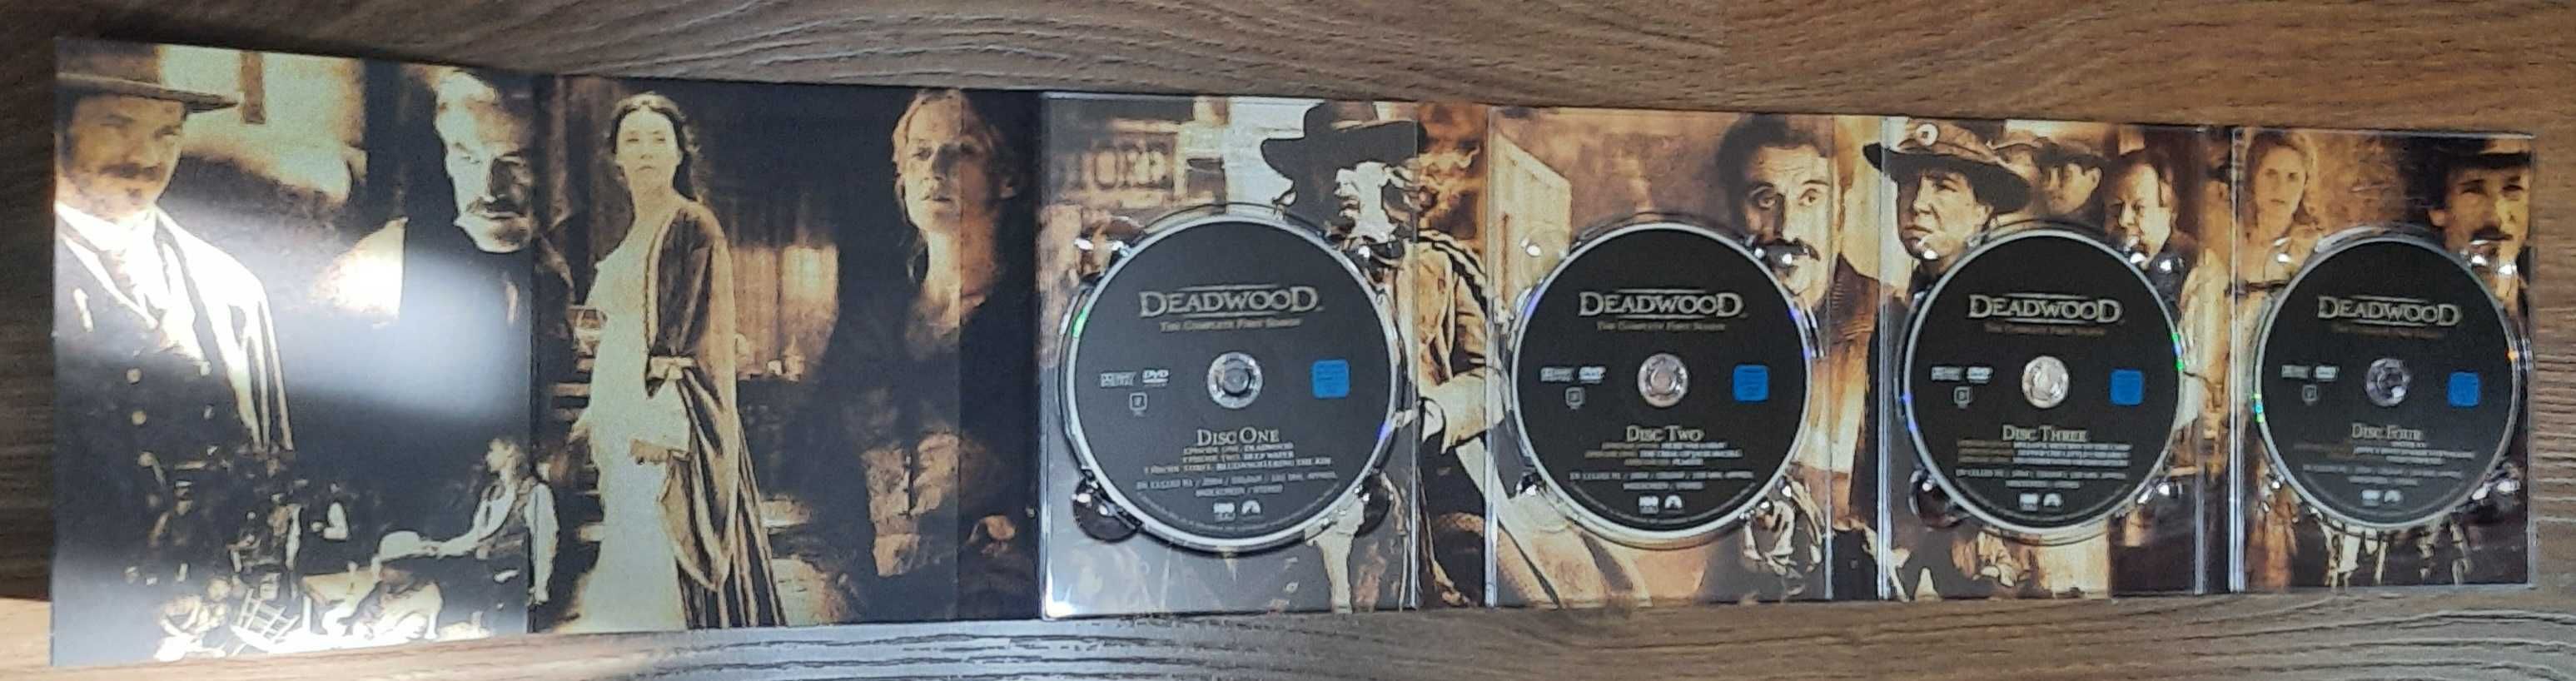 Deadwood Serial HBO Boxset 2 Sezoane (1 & 2, din total 3 sezoane)